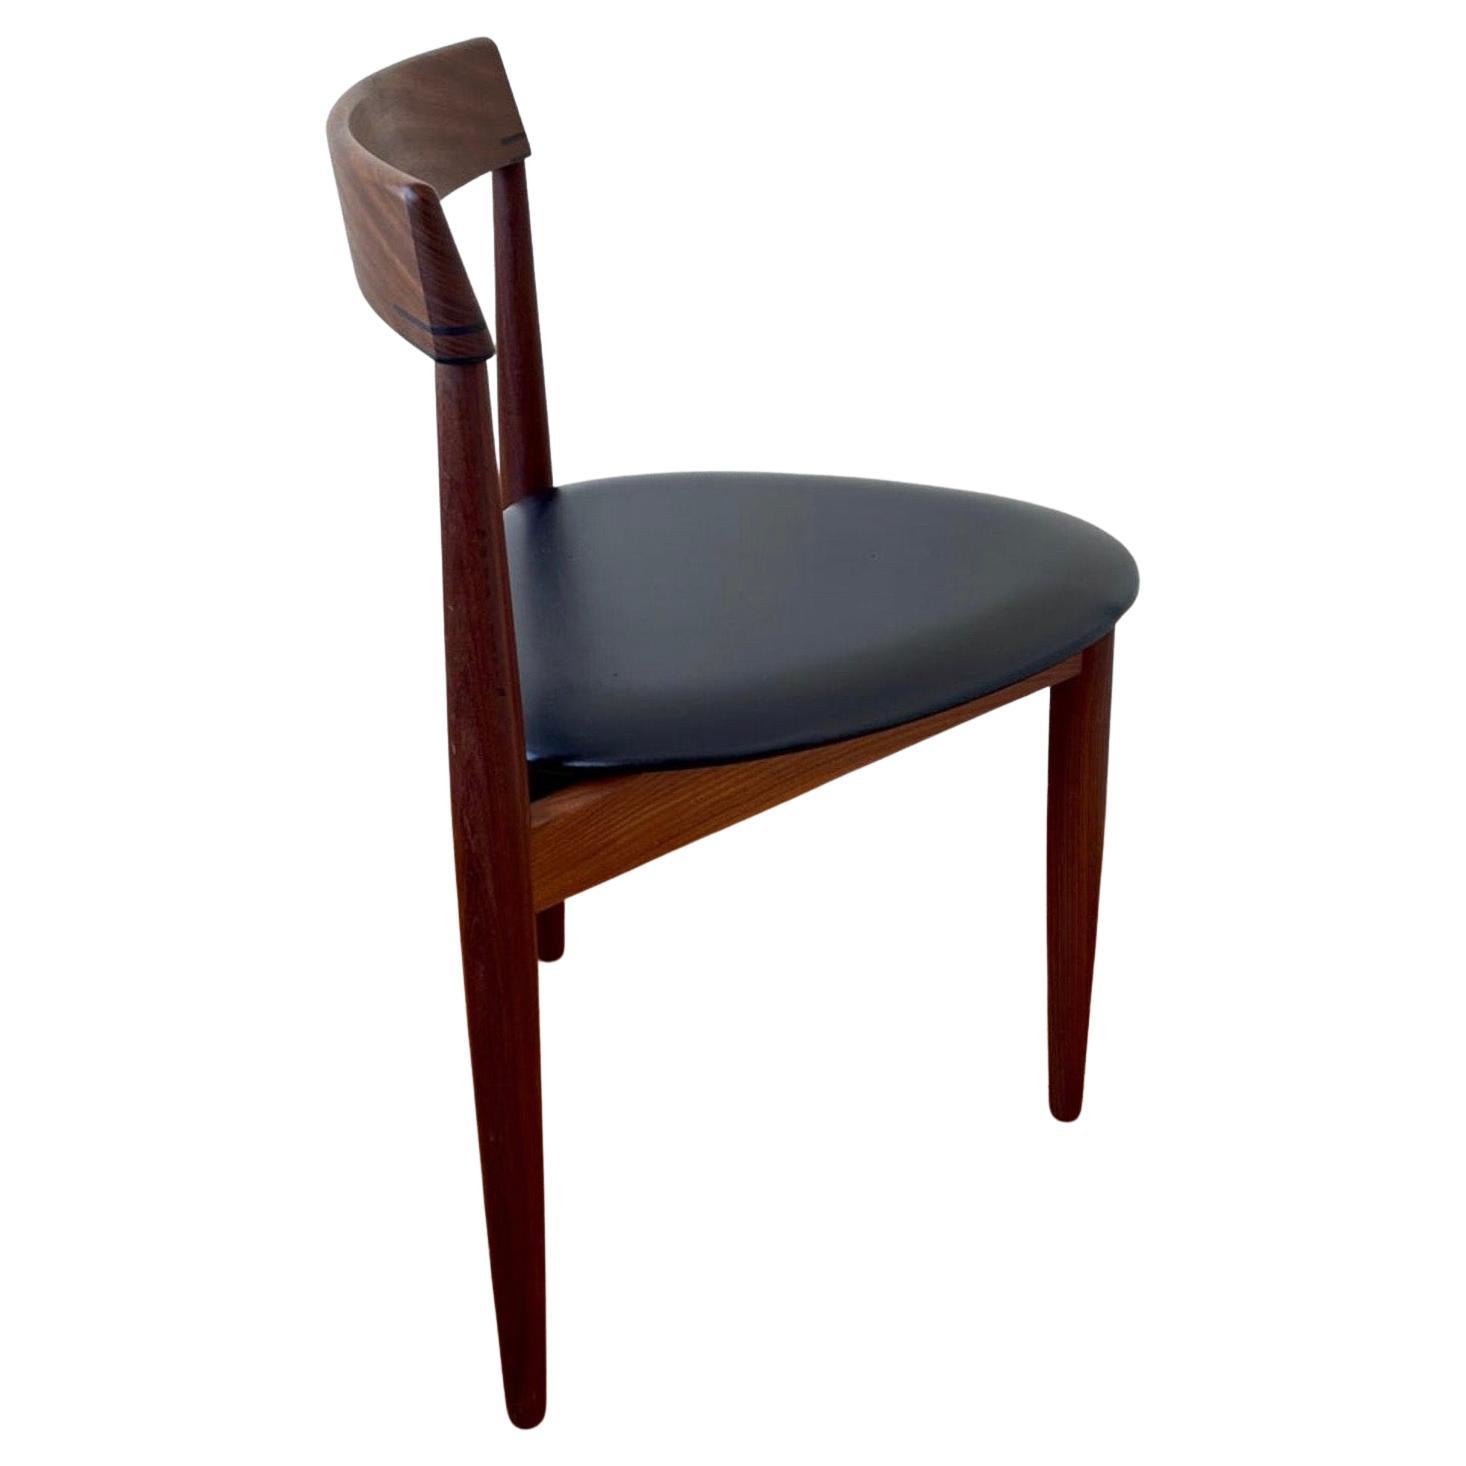 Danish Modern Chair Design by Hans Olsen for Frem Rojle